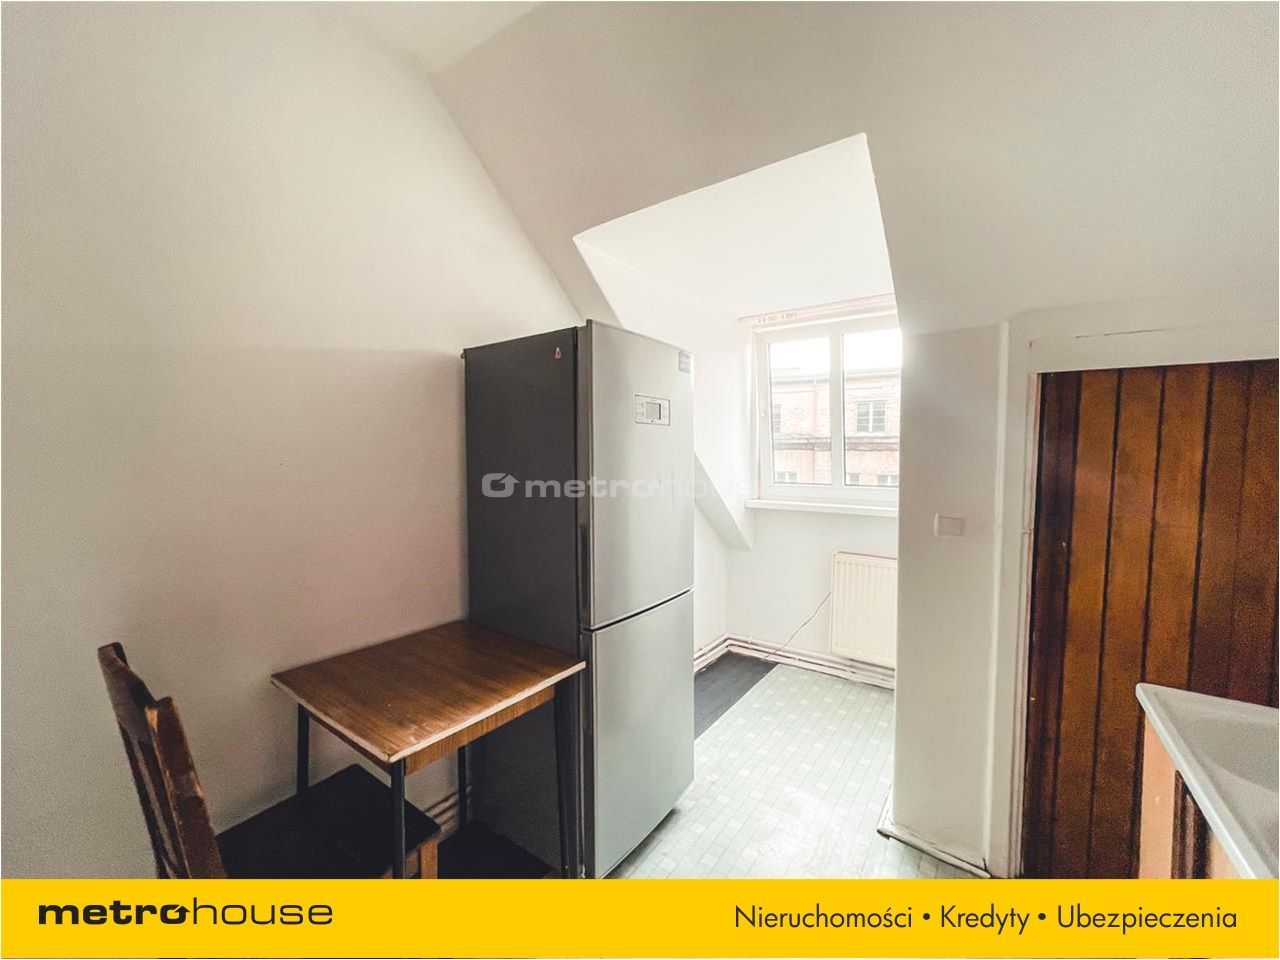 Mieszkanie na sprzedaż, Gdańsk, Śródmieście, 2 pokoje, 40 mkw, za 602000 zł: zdjęcie 93587126